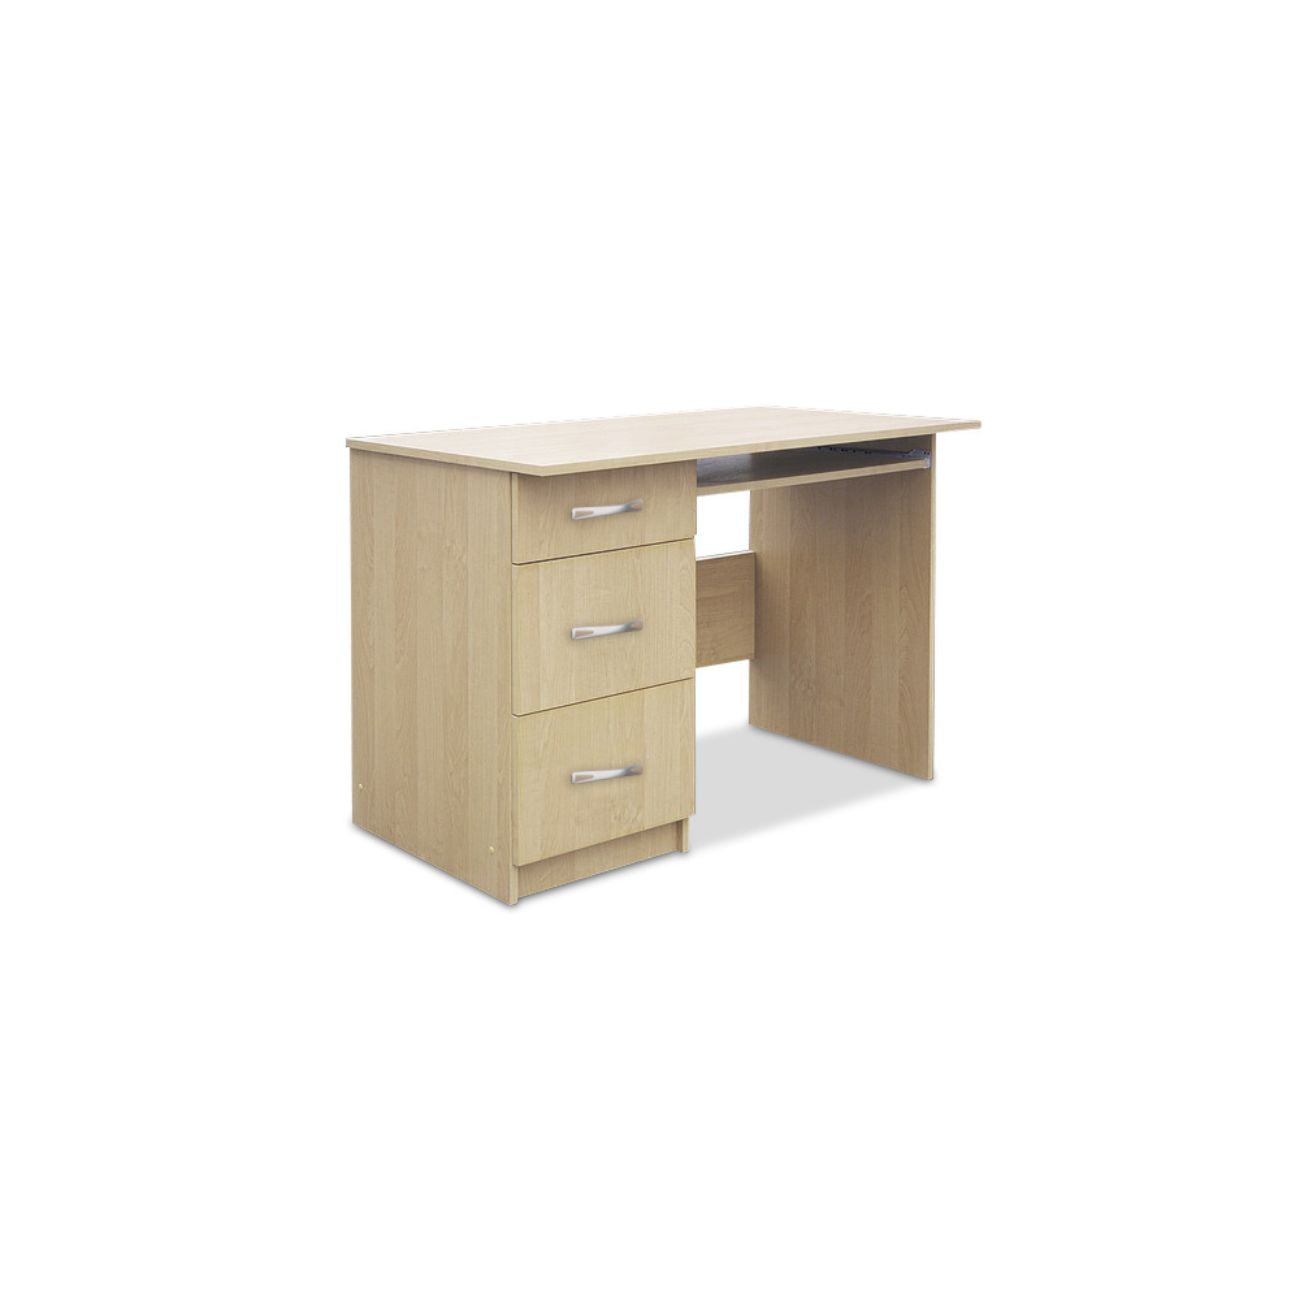 Małe biurko komputerowe MIKI 110 cm. 3 szuflady to mebel idealny do niewielkich pomieszczeń typu: pokój młodzieżowy, biuro, czy gabinet.